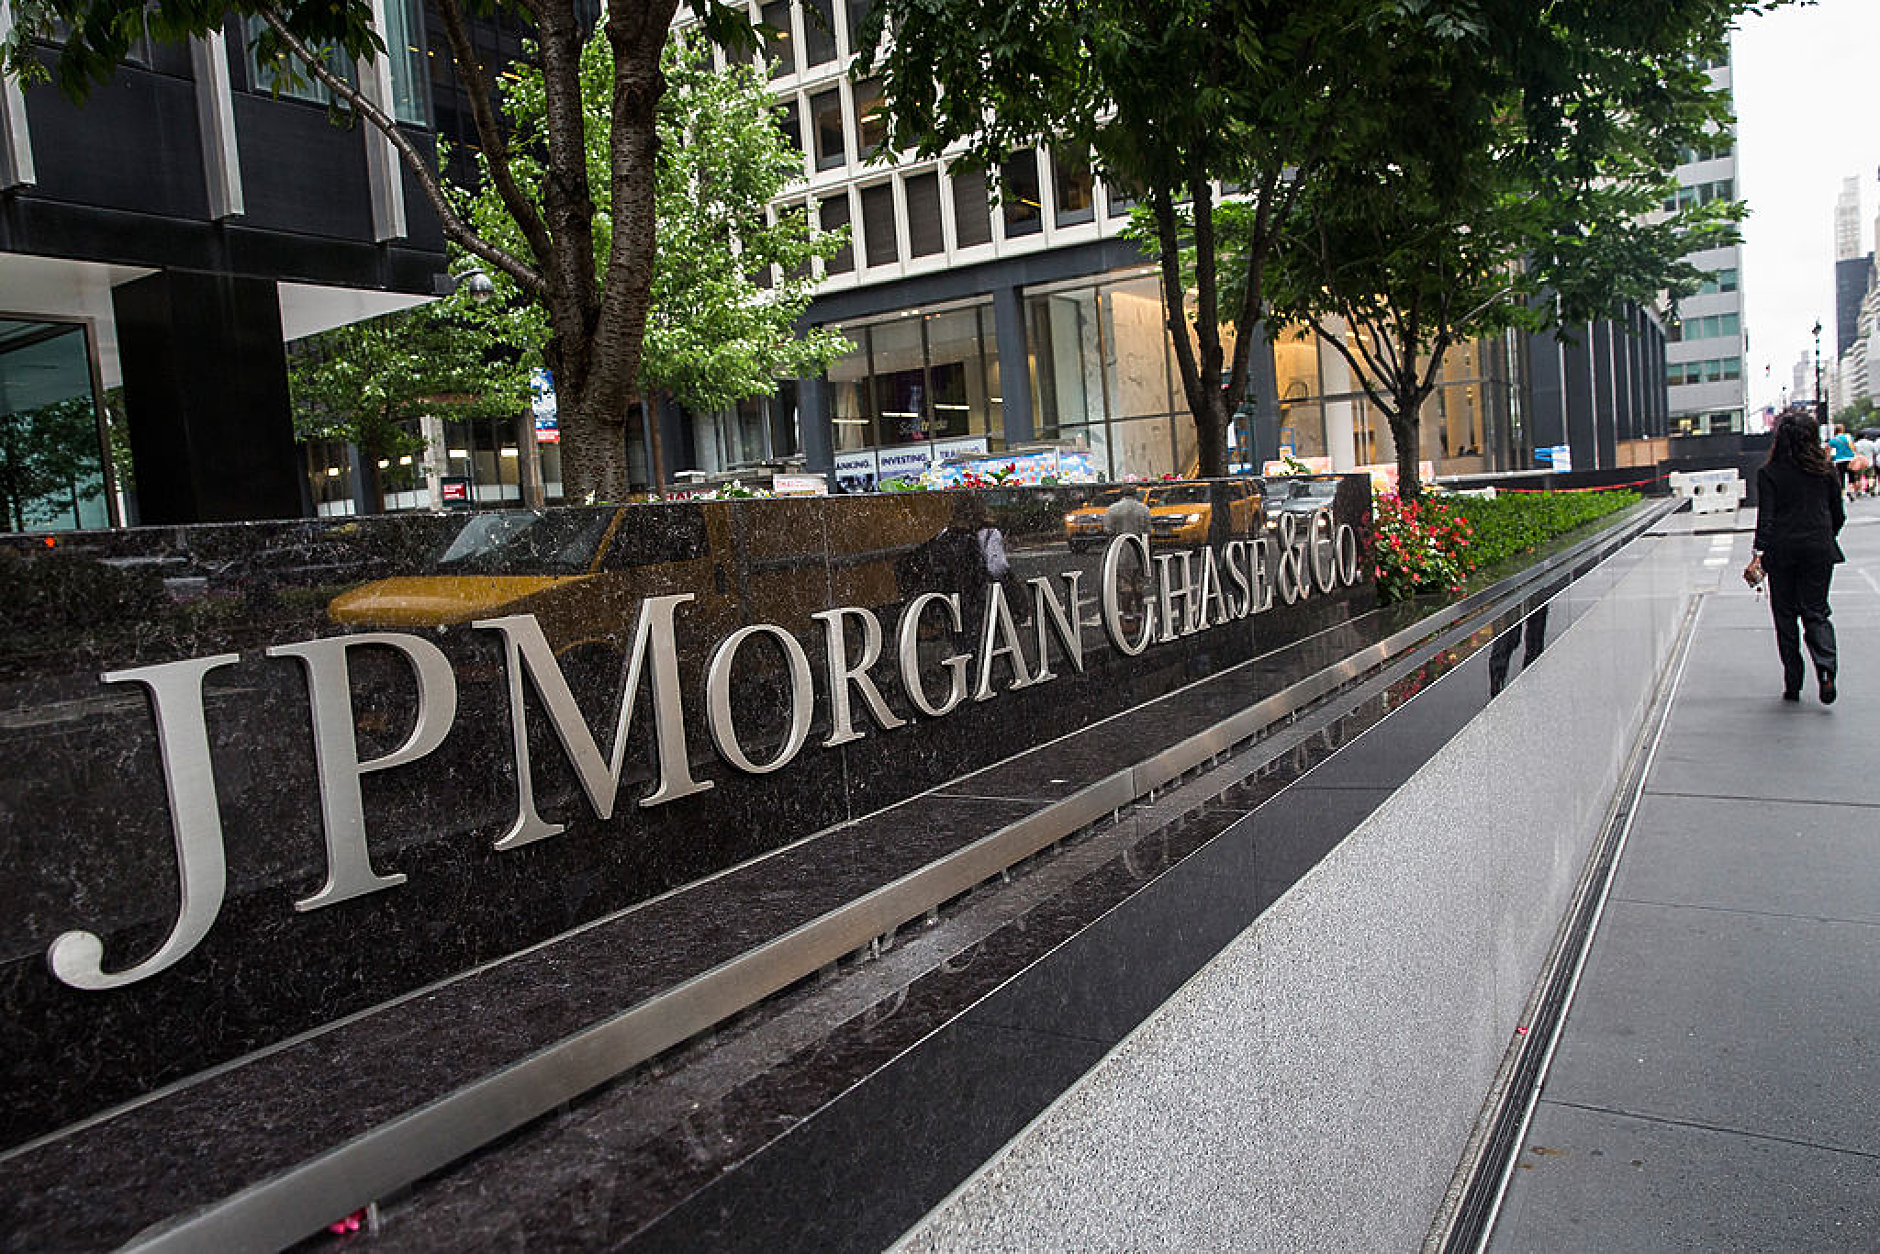 Руски съд разпореди изземване на близо половин милиард долара от JPMorgan Chase